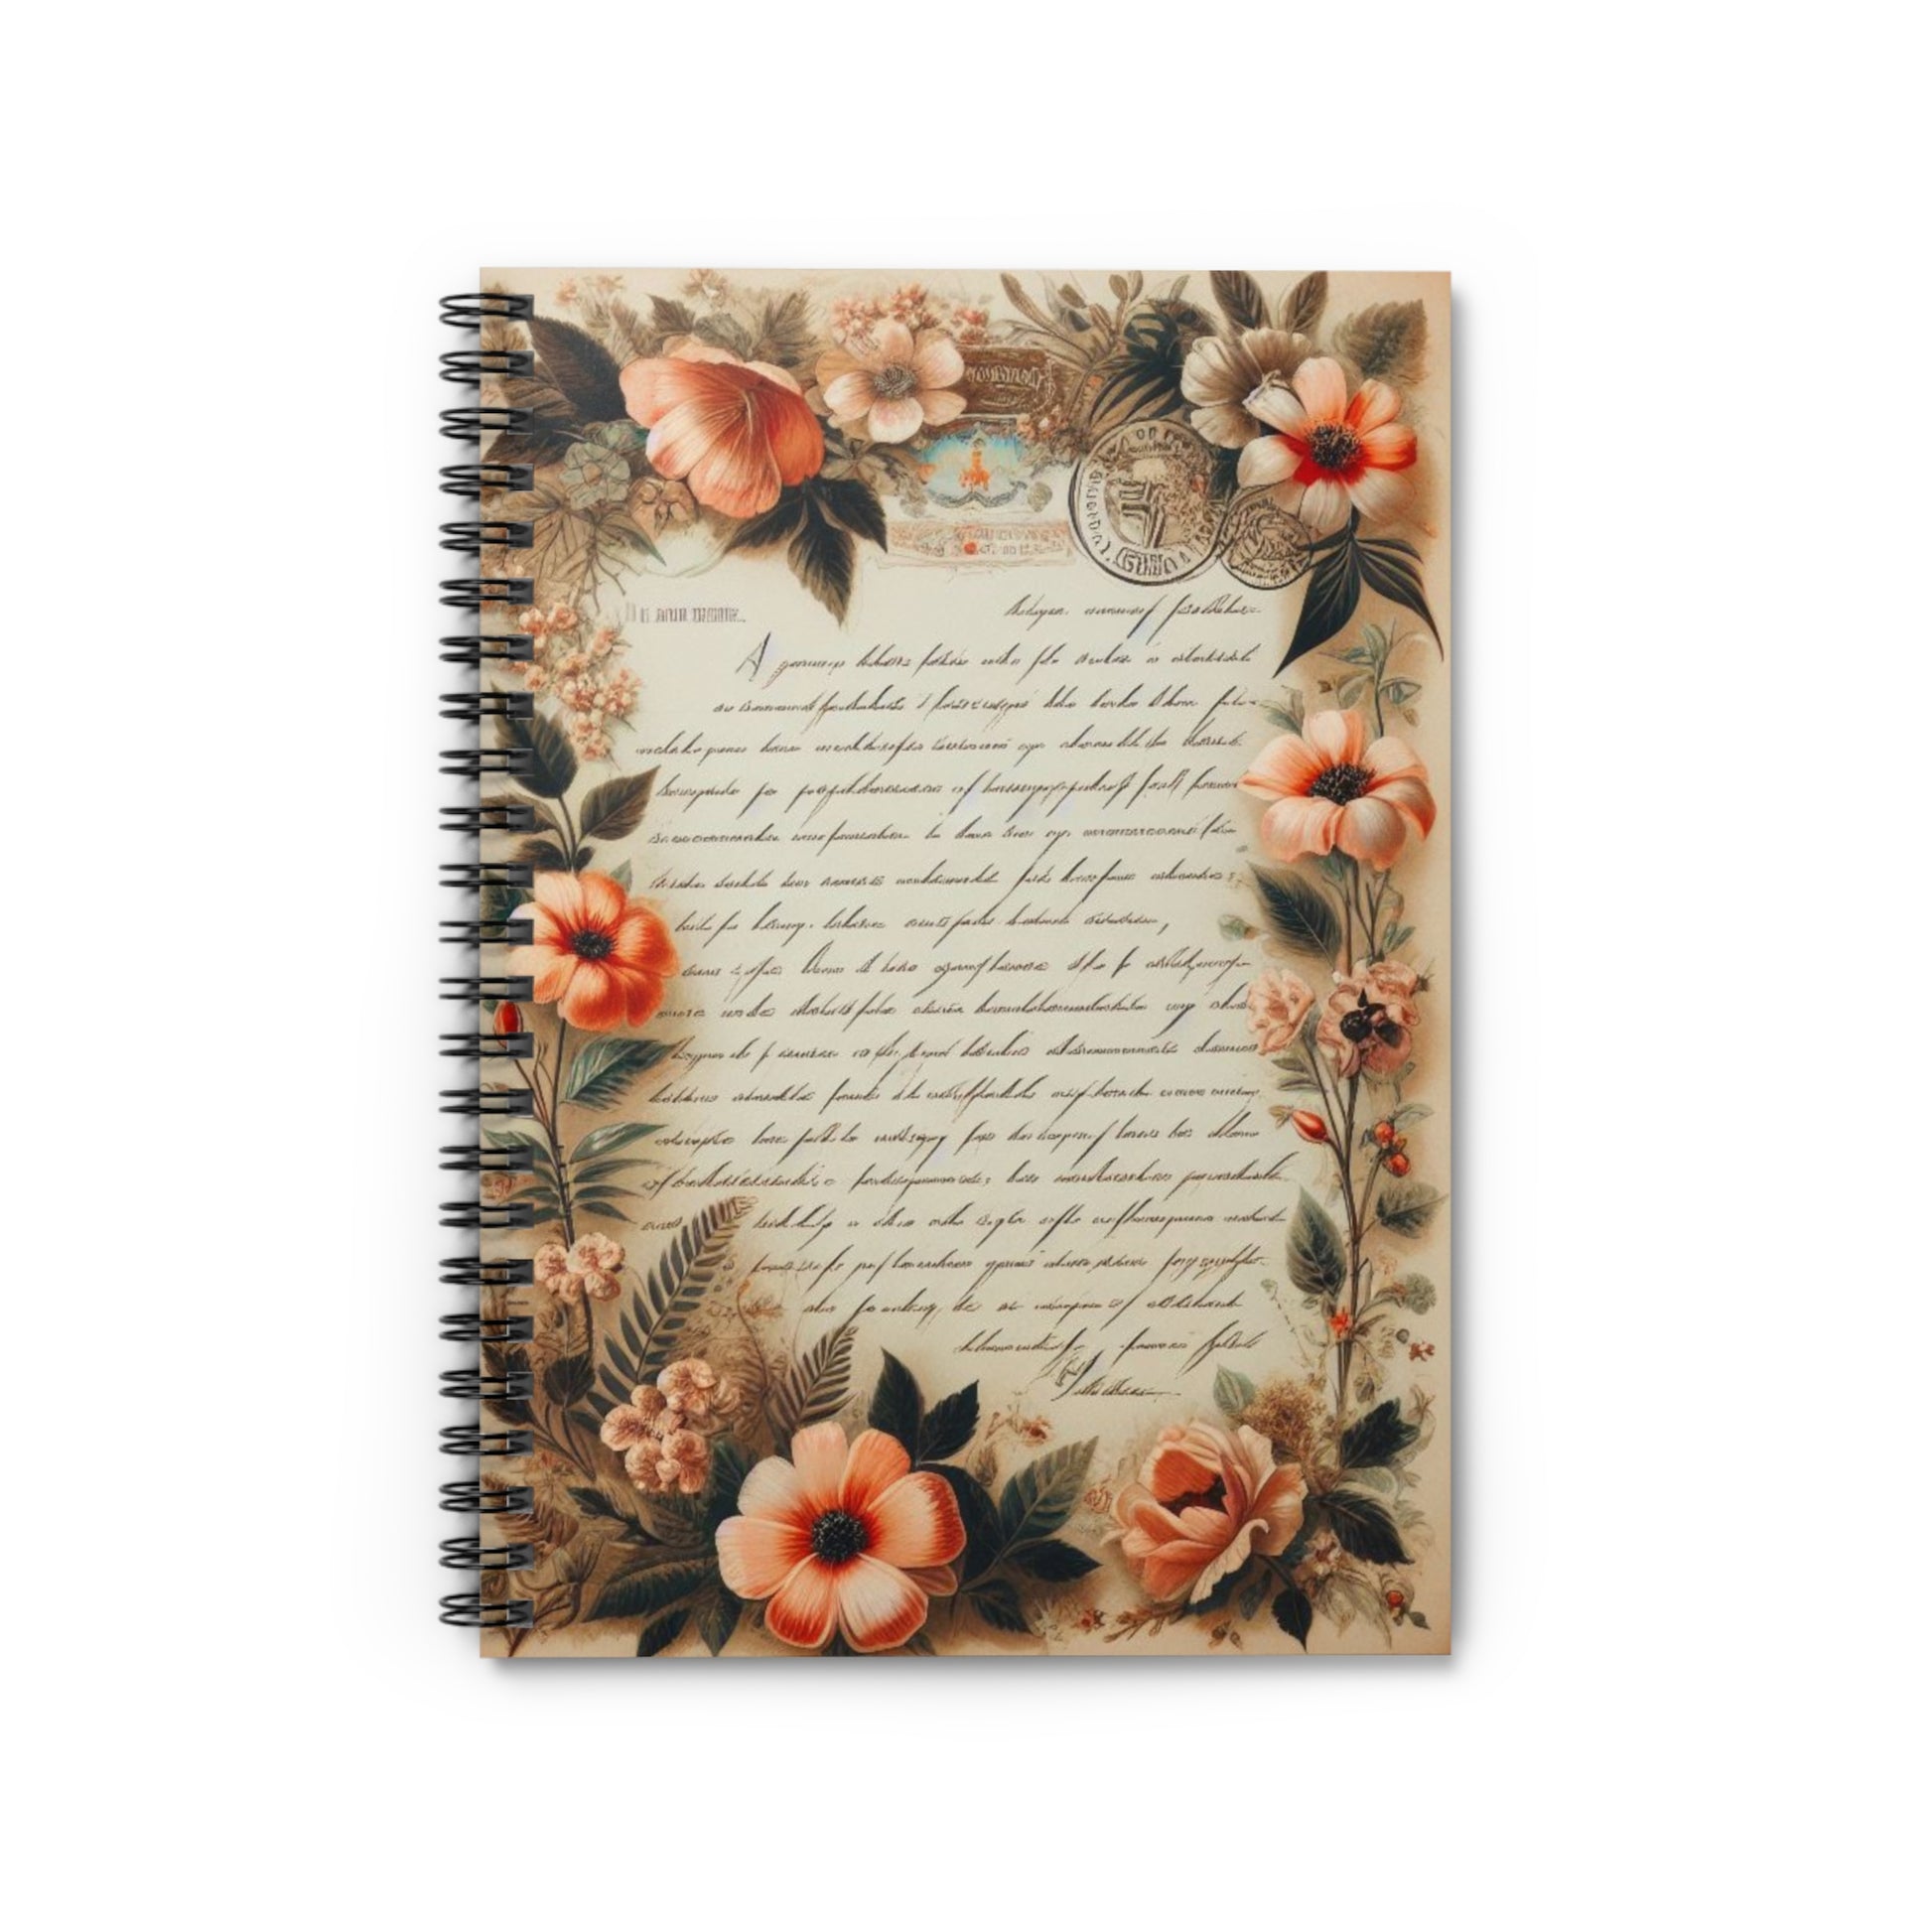 Floral Ephemera Vintage Letter Spiral Notebook Lined Journal